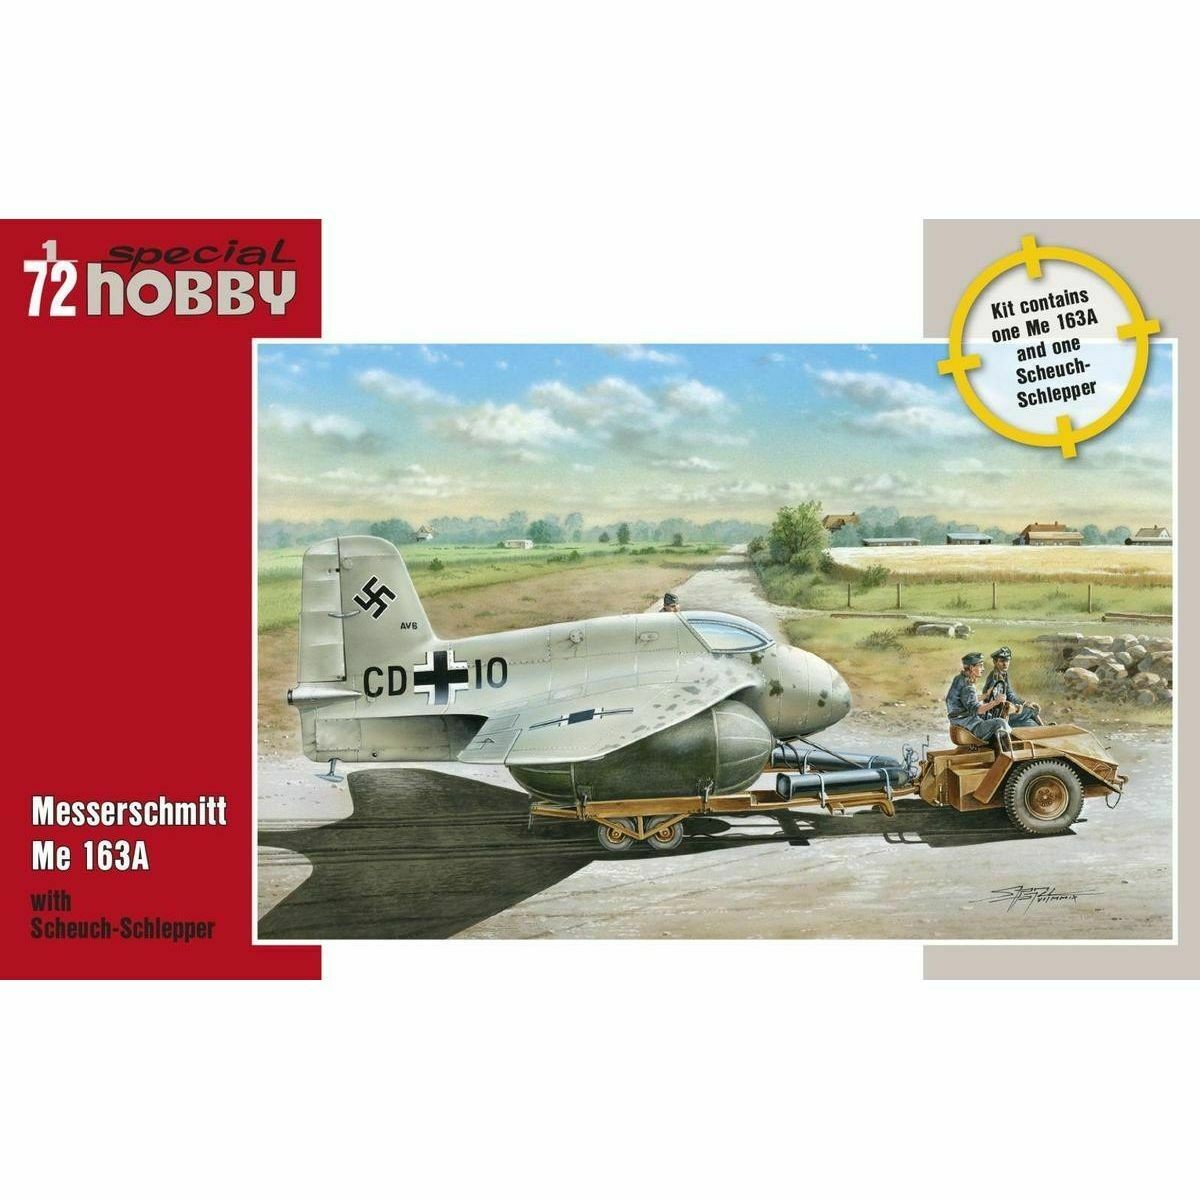 Special Hobby 72183 Messerschmitt Me 163A with Scheuch-Schlepper 1:72